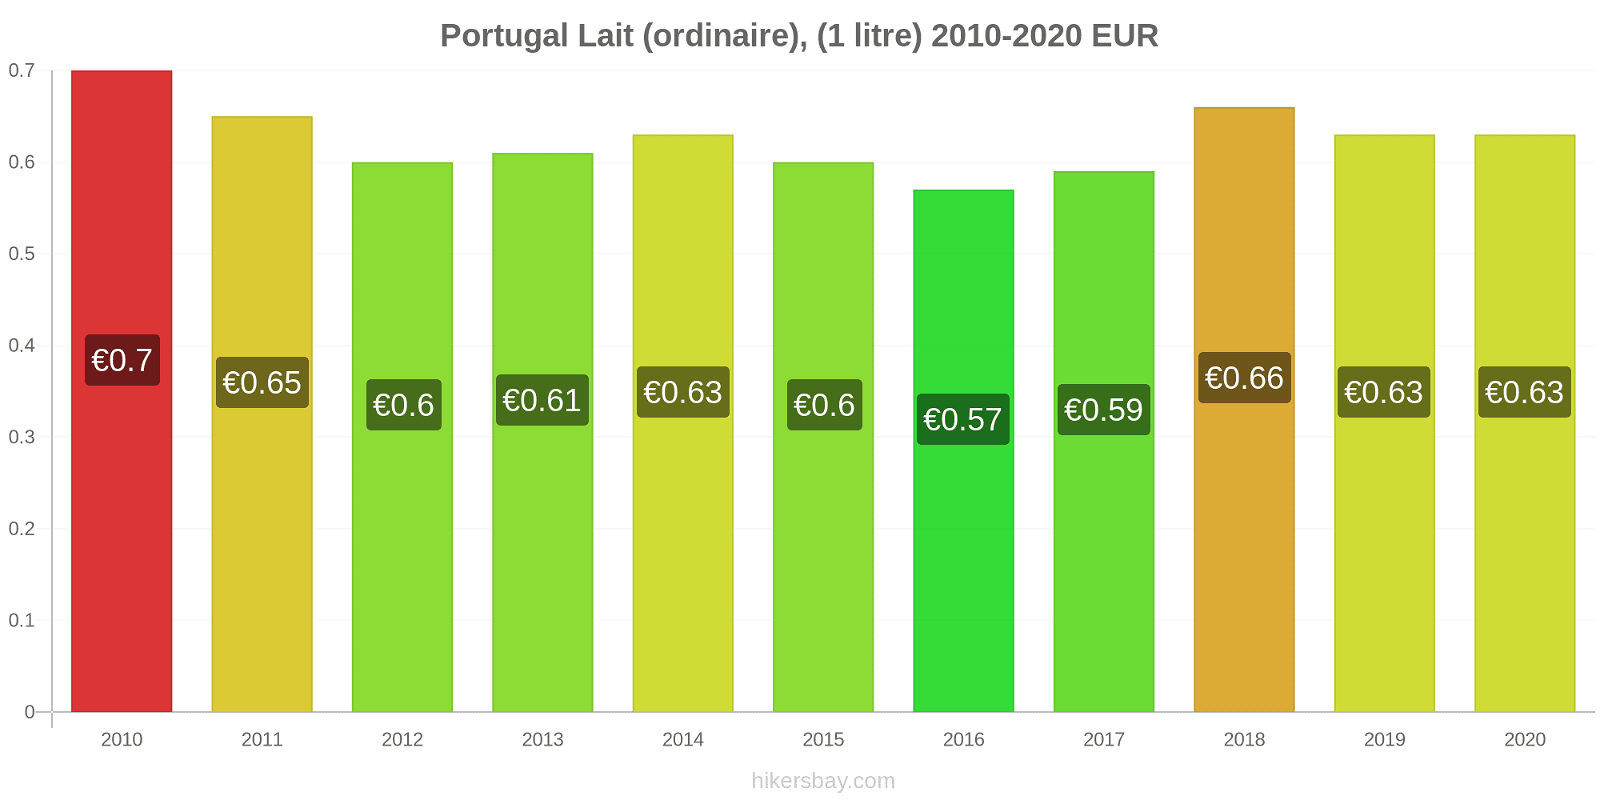 Portugal changements de prix (Régulier), lait (1 litre) hikersbay.com